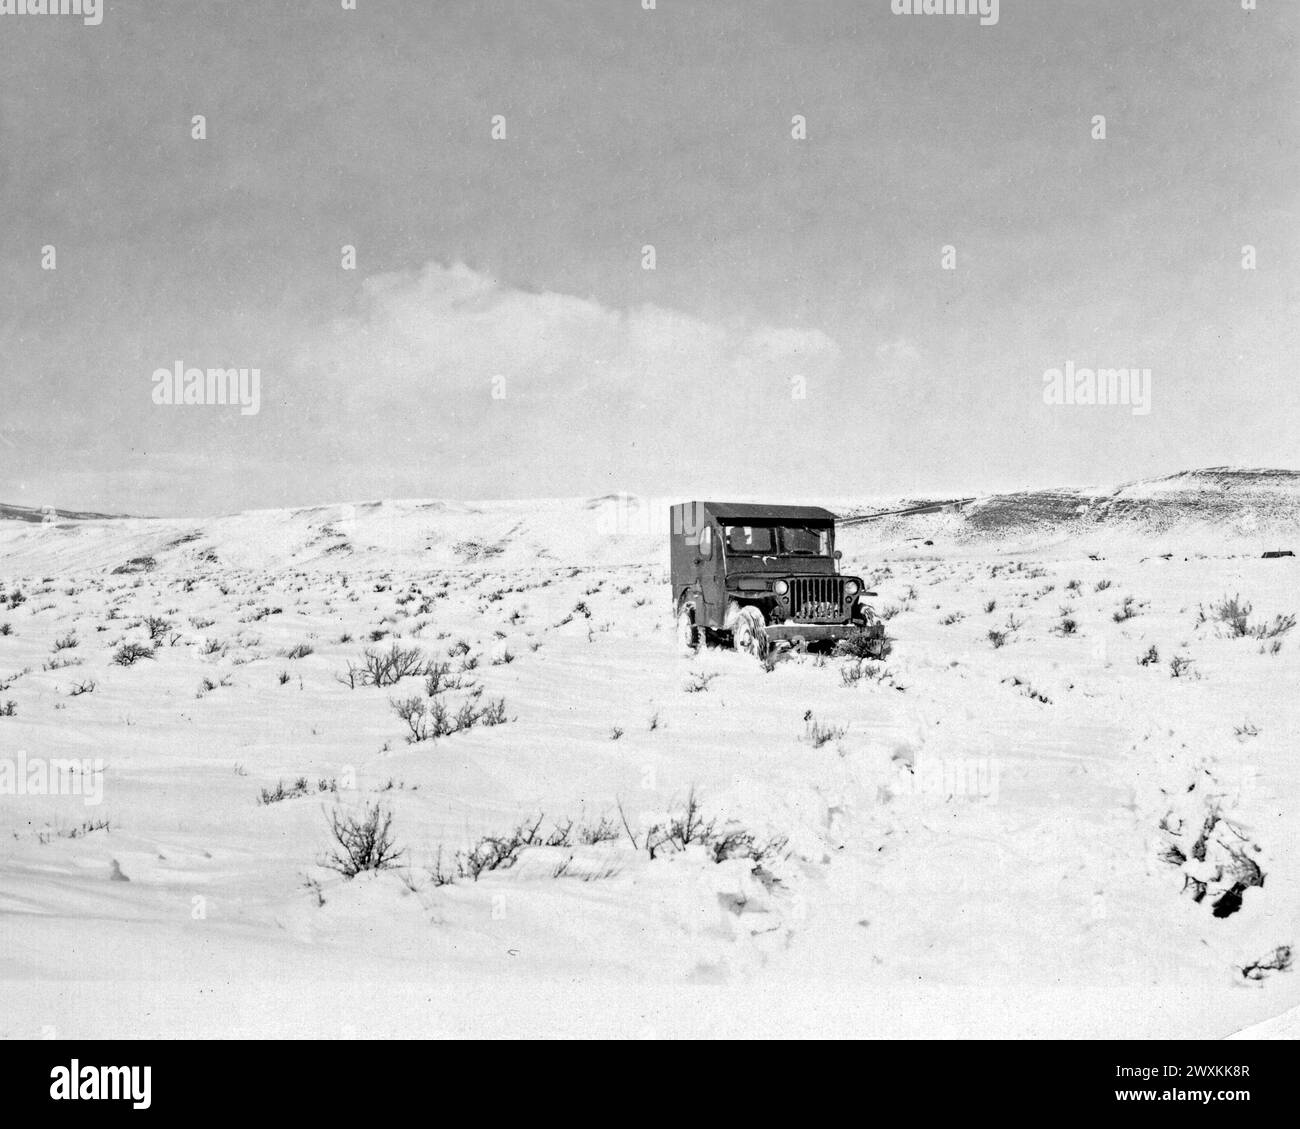 Une jeep traverse un champ enneigé dans le Wyoming rural CA. 1930s ou 1940s. Banque D'Images